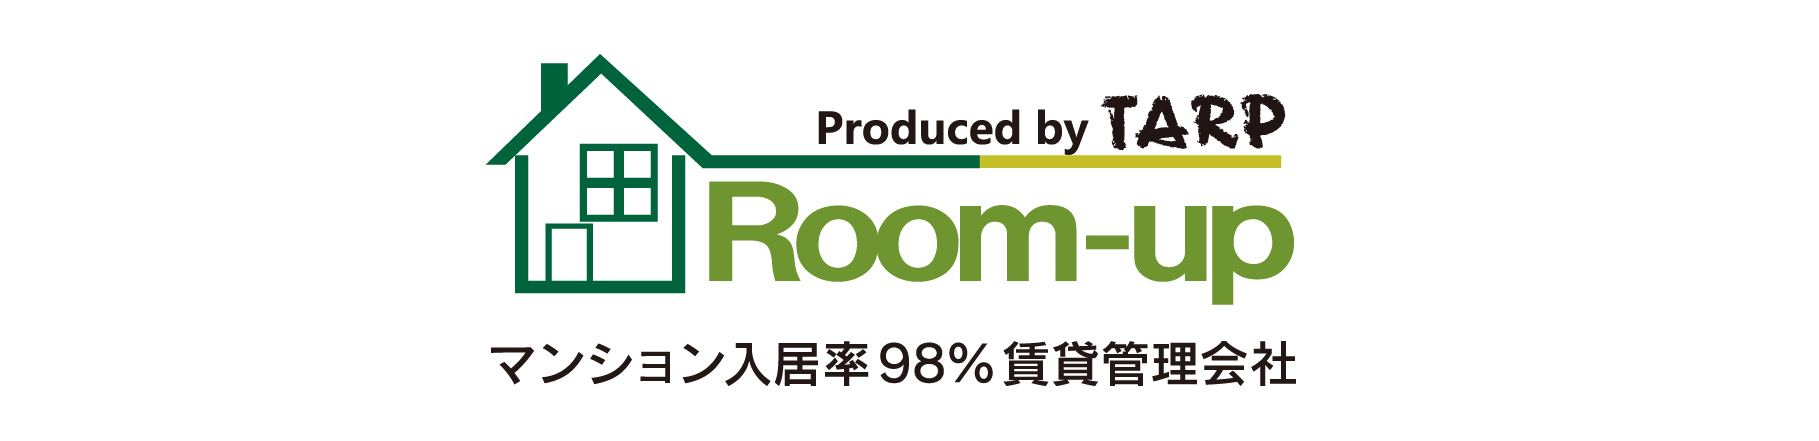 株式会社Room-up